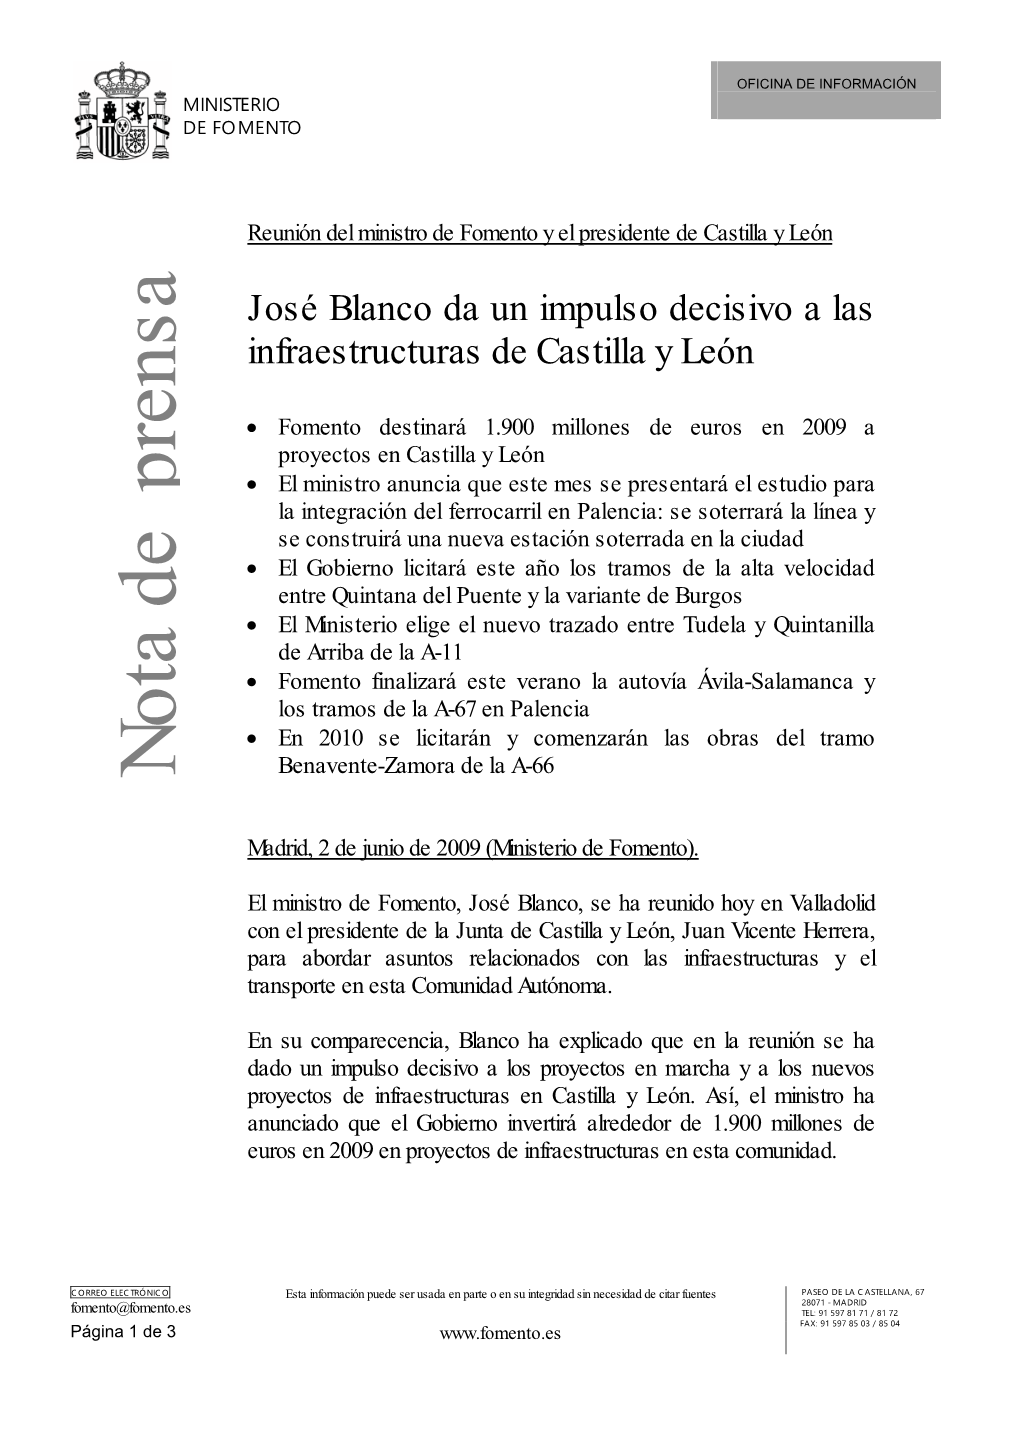 José Blanco Da Un Impulso Decisivo a Las Infraestructuras De Castilla Y León